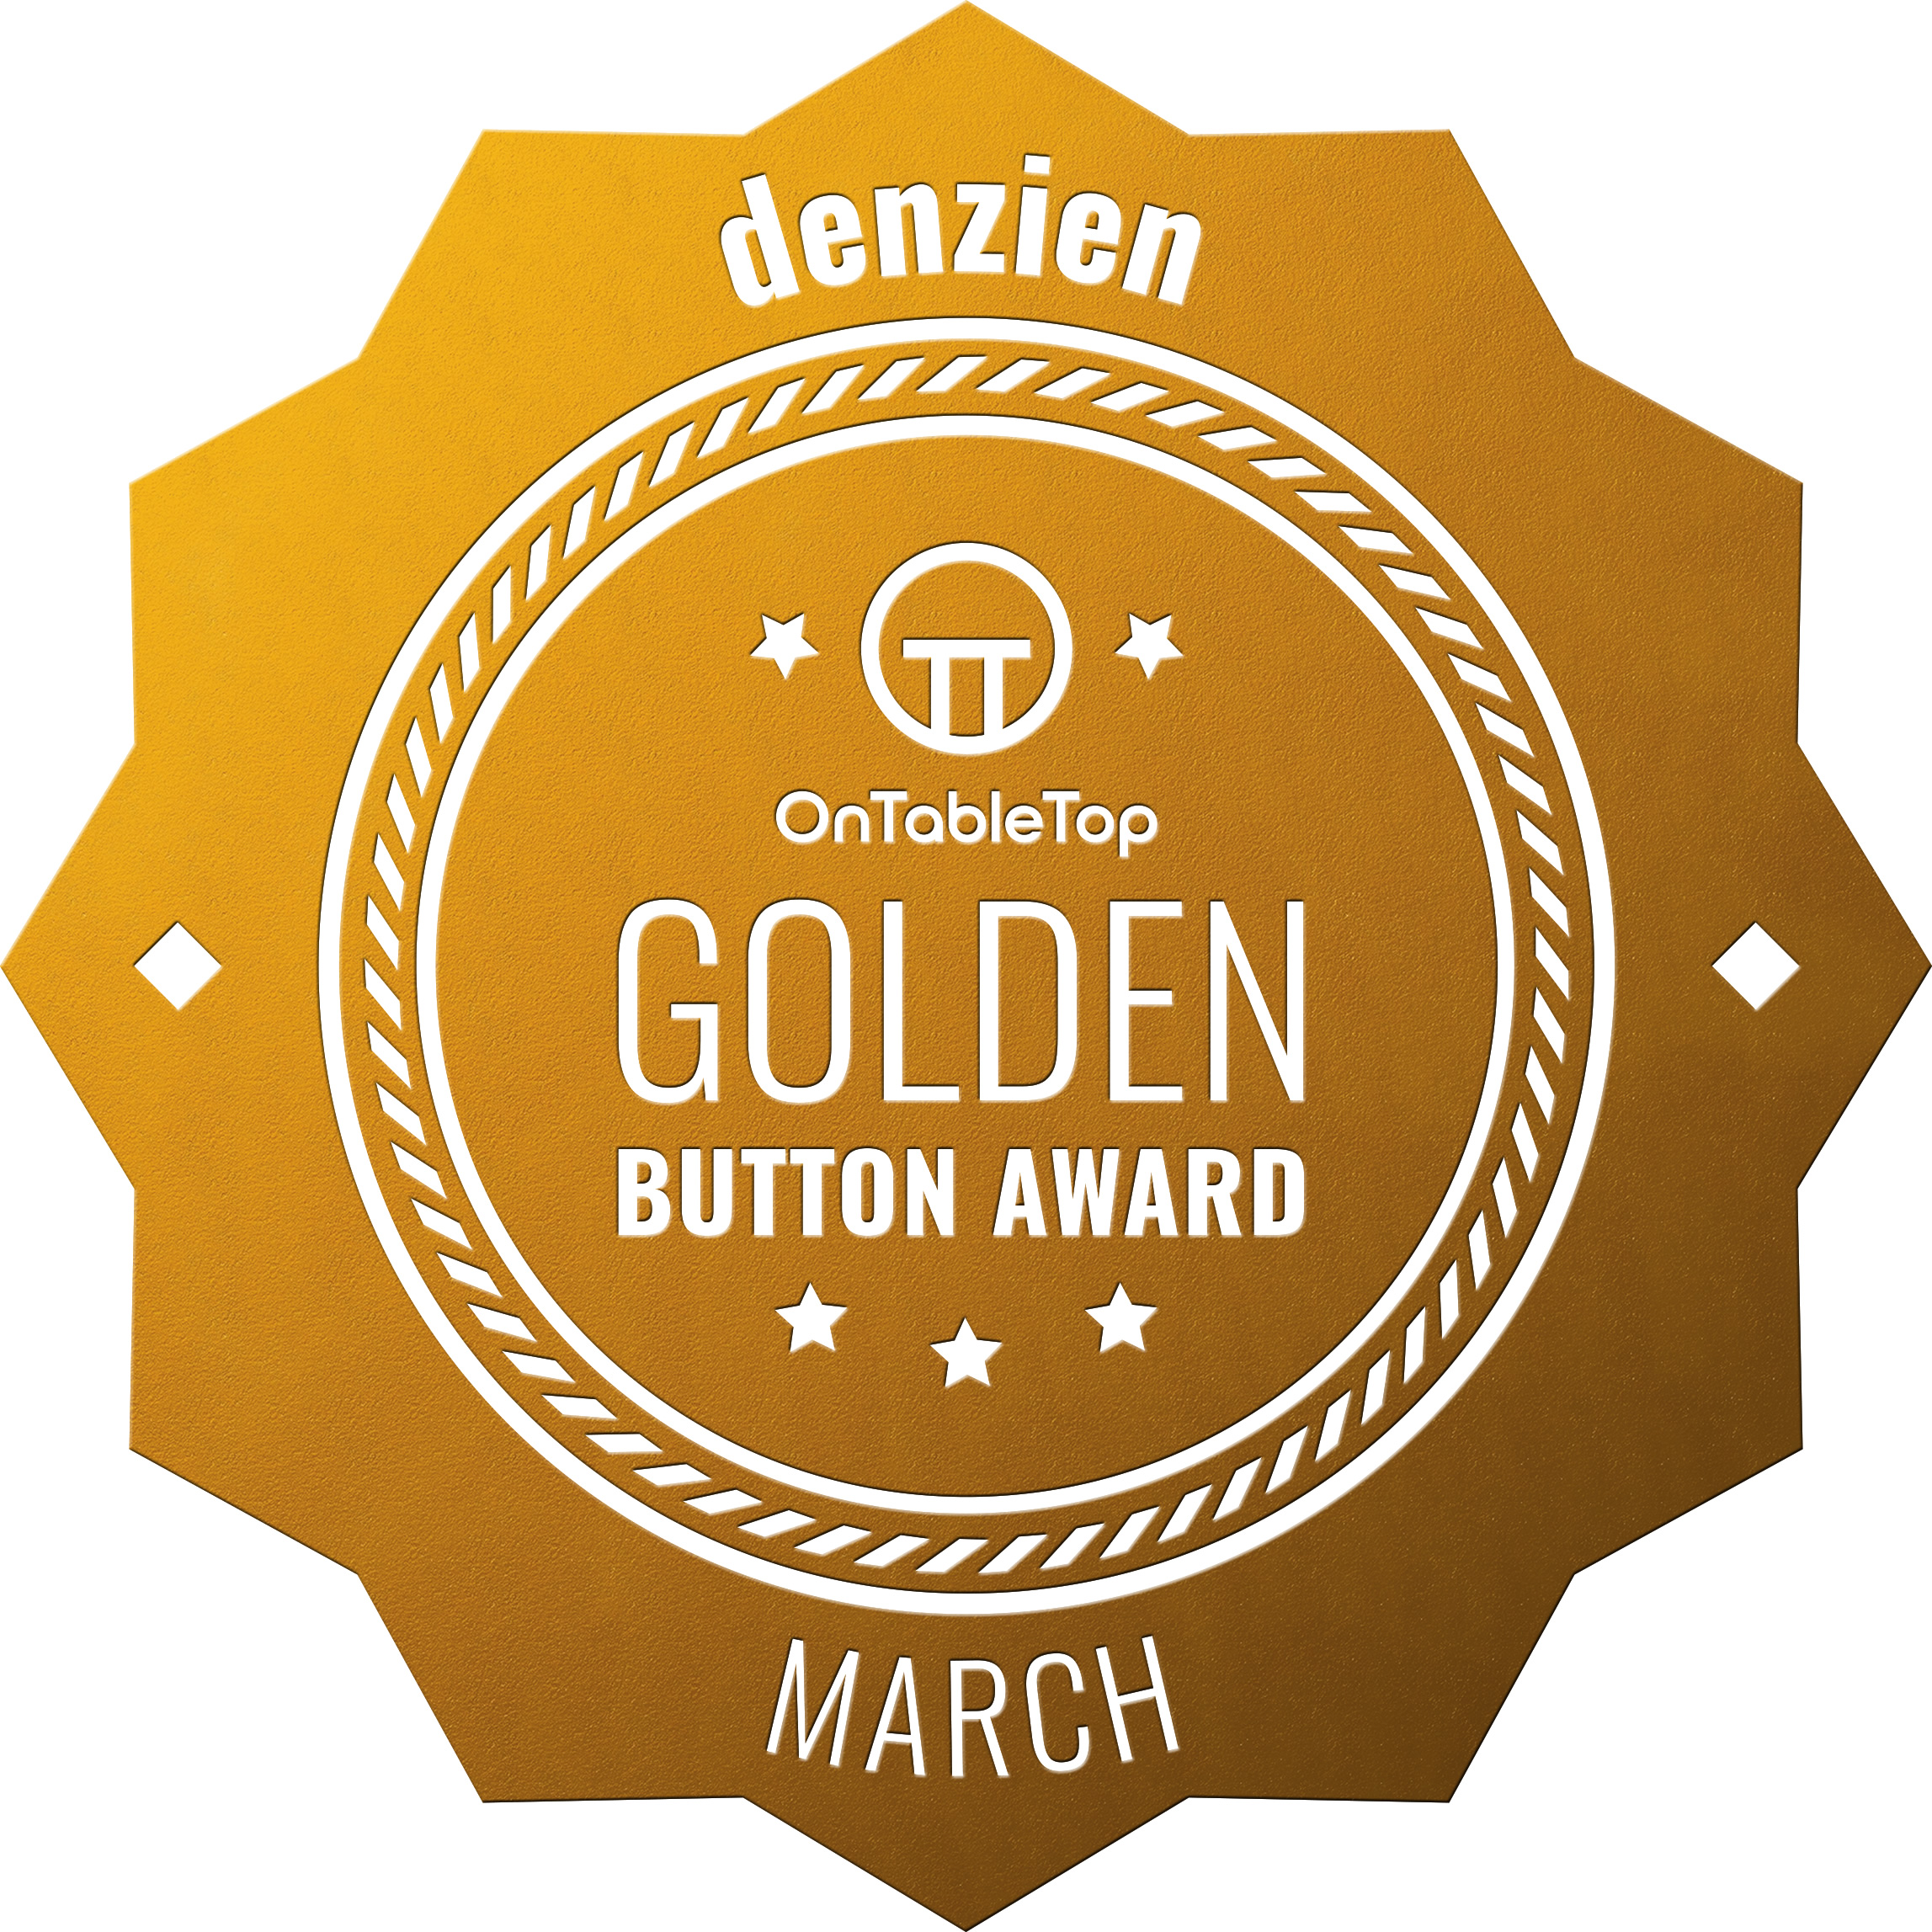 denzien Golden Button March 2021